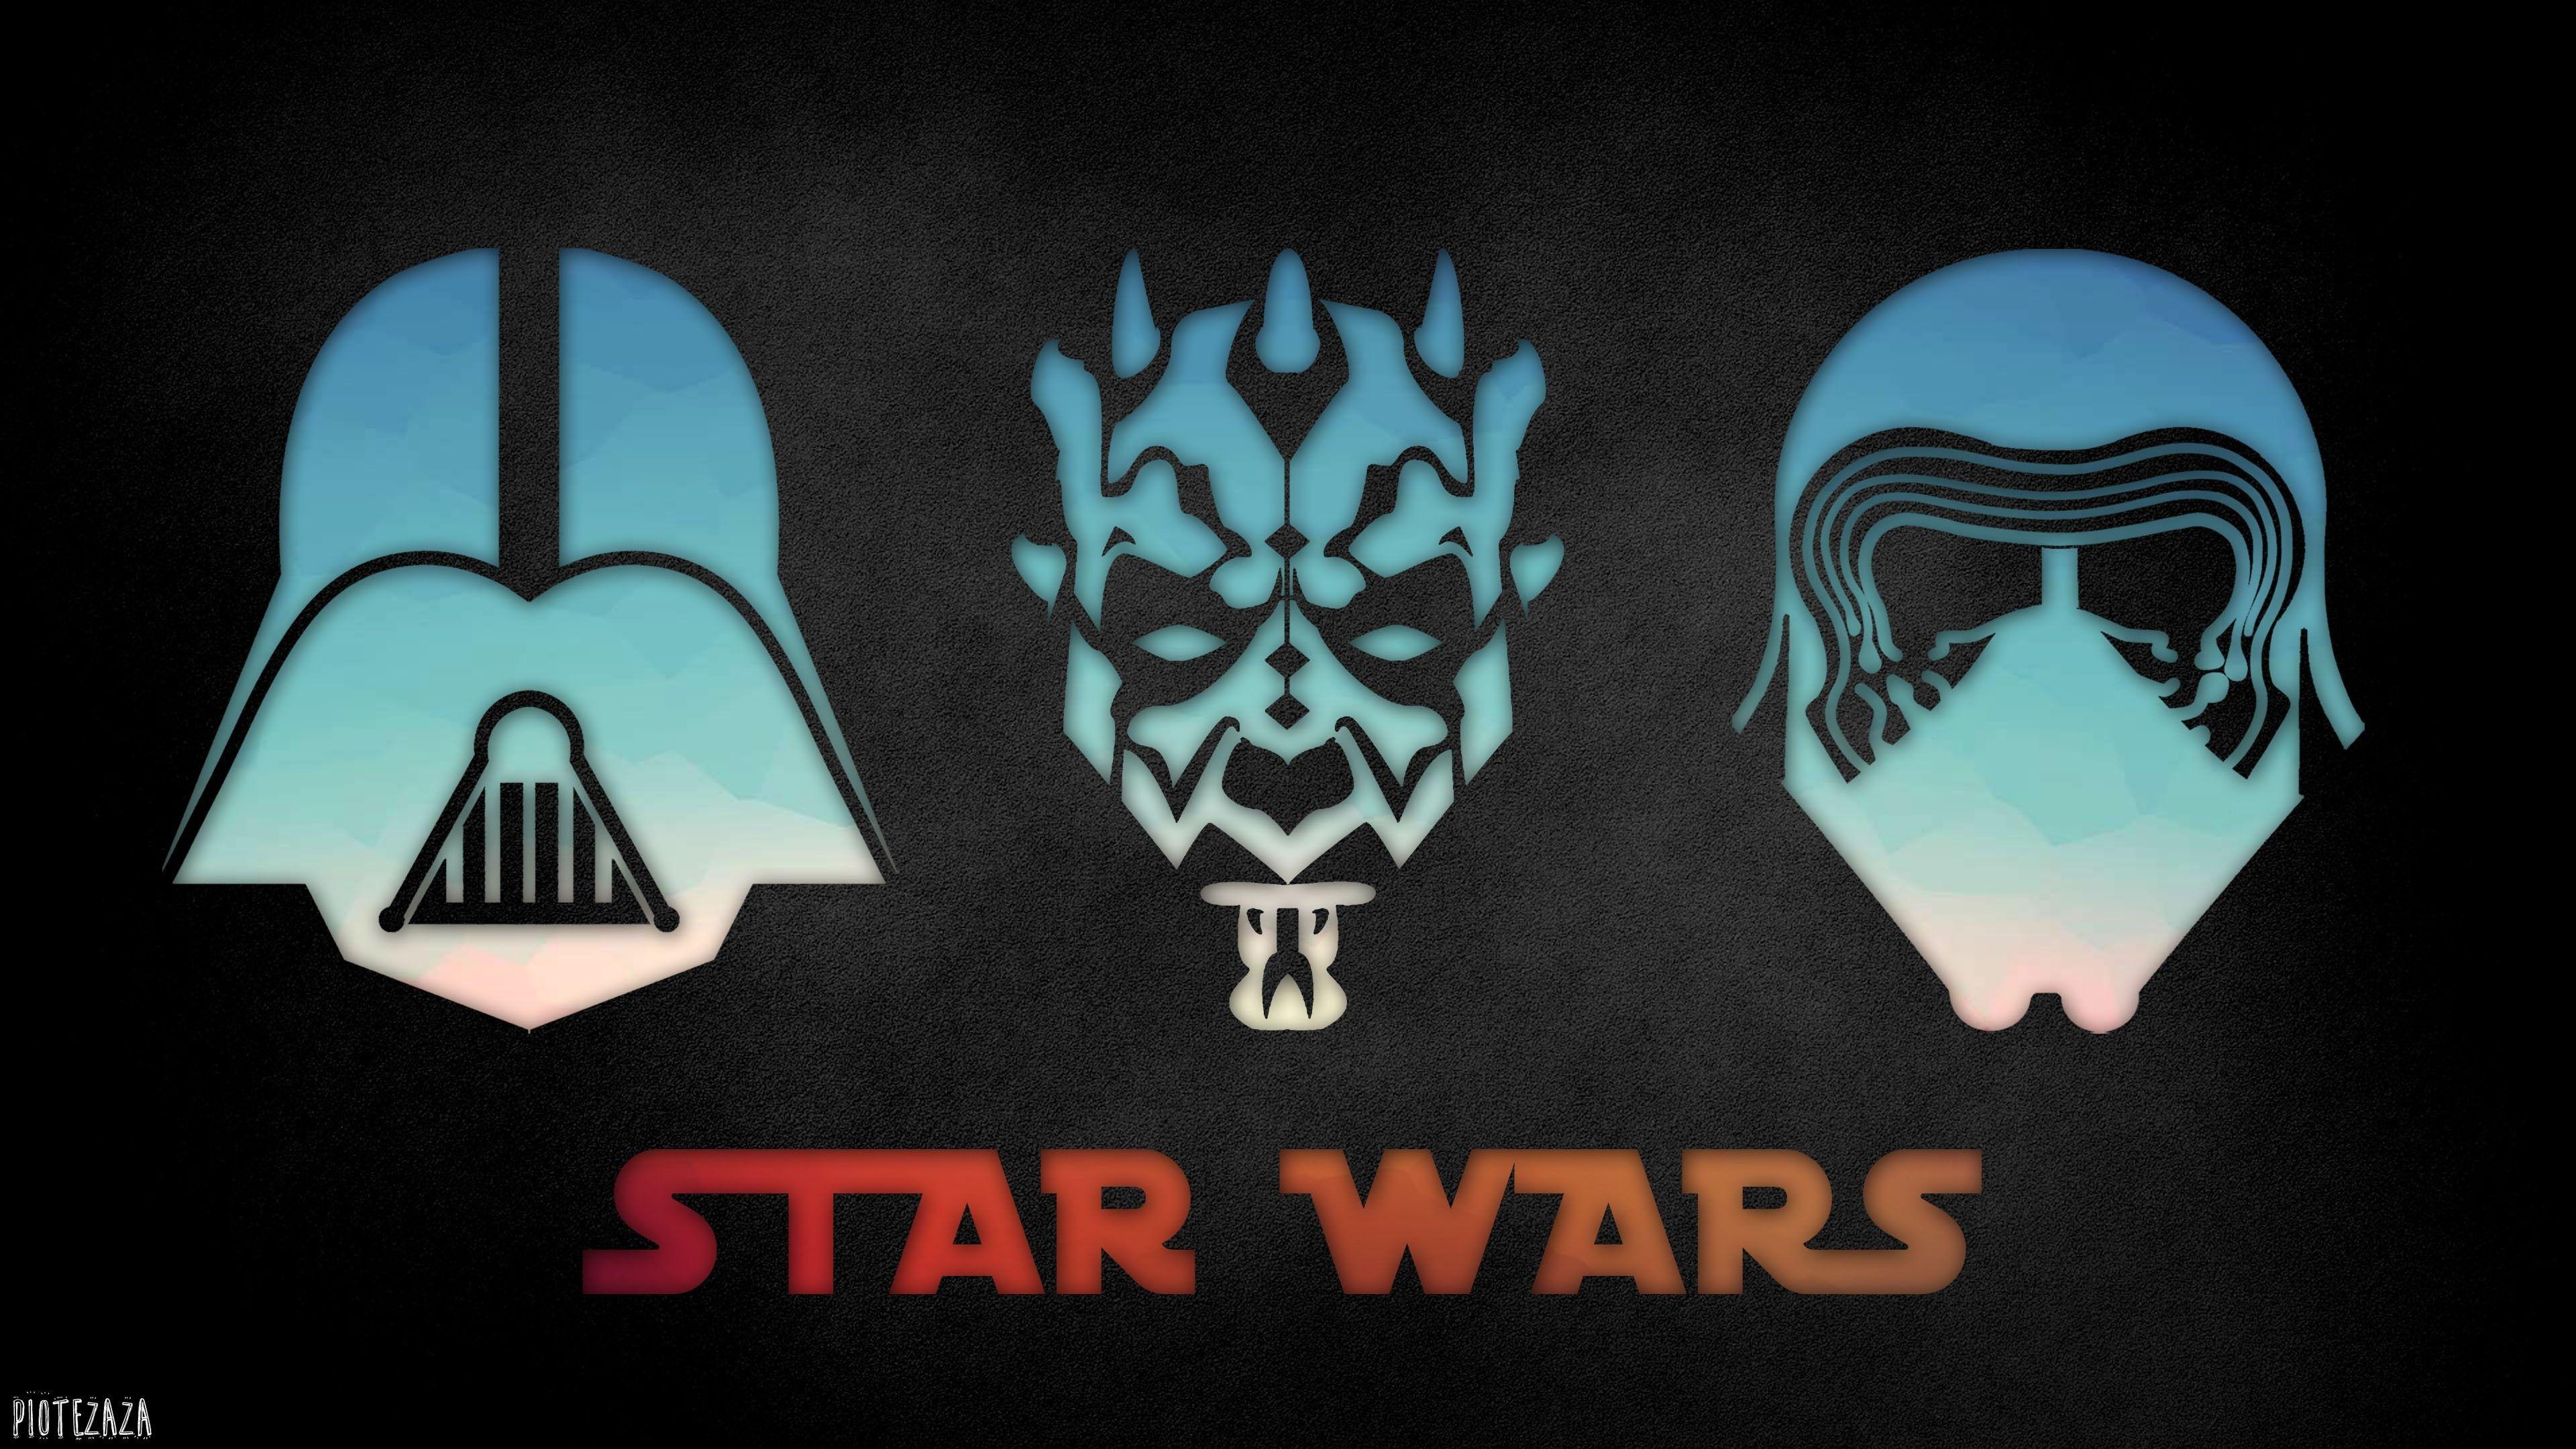 Darth Logo - Wallpaper : illustration, Star Wars, logo, Darth Vader, Kylo Ren